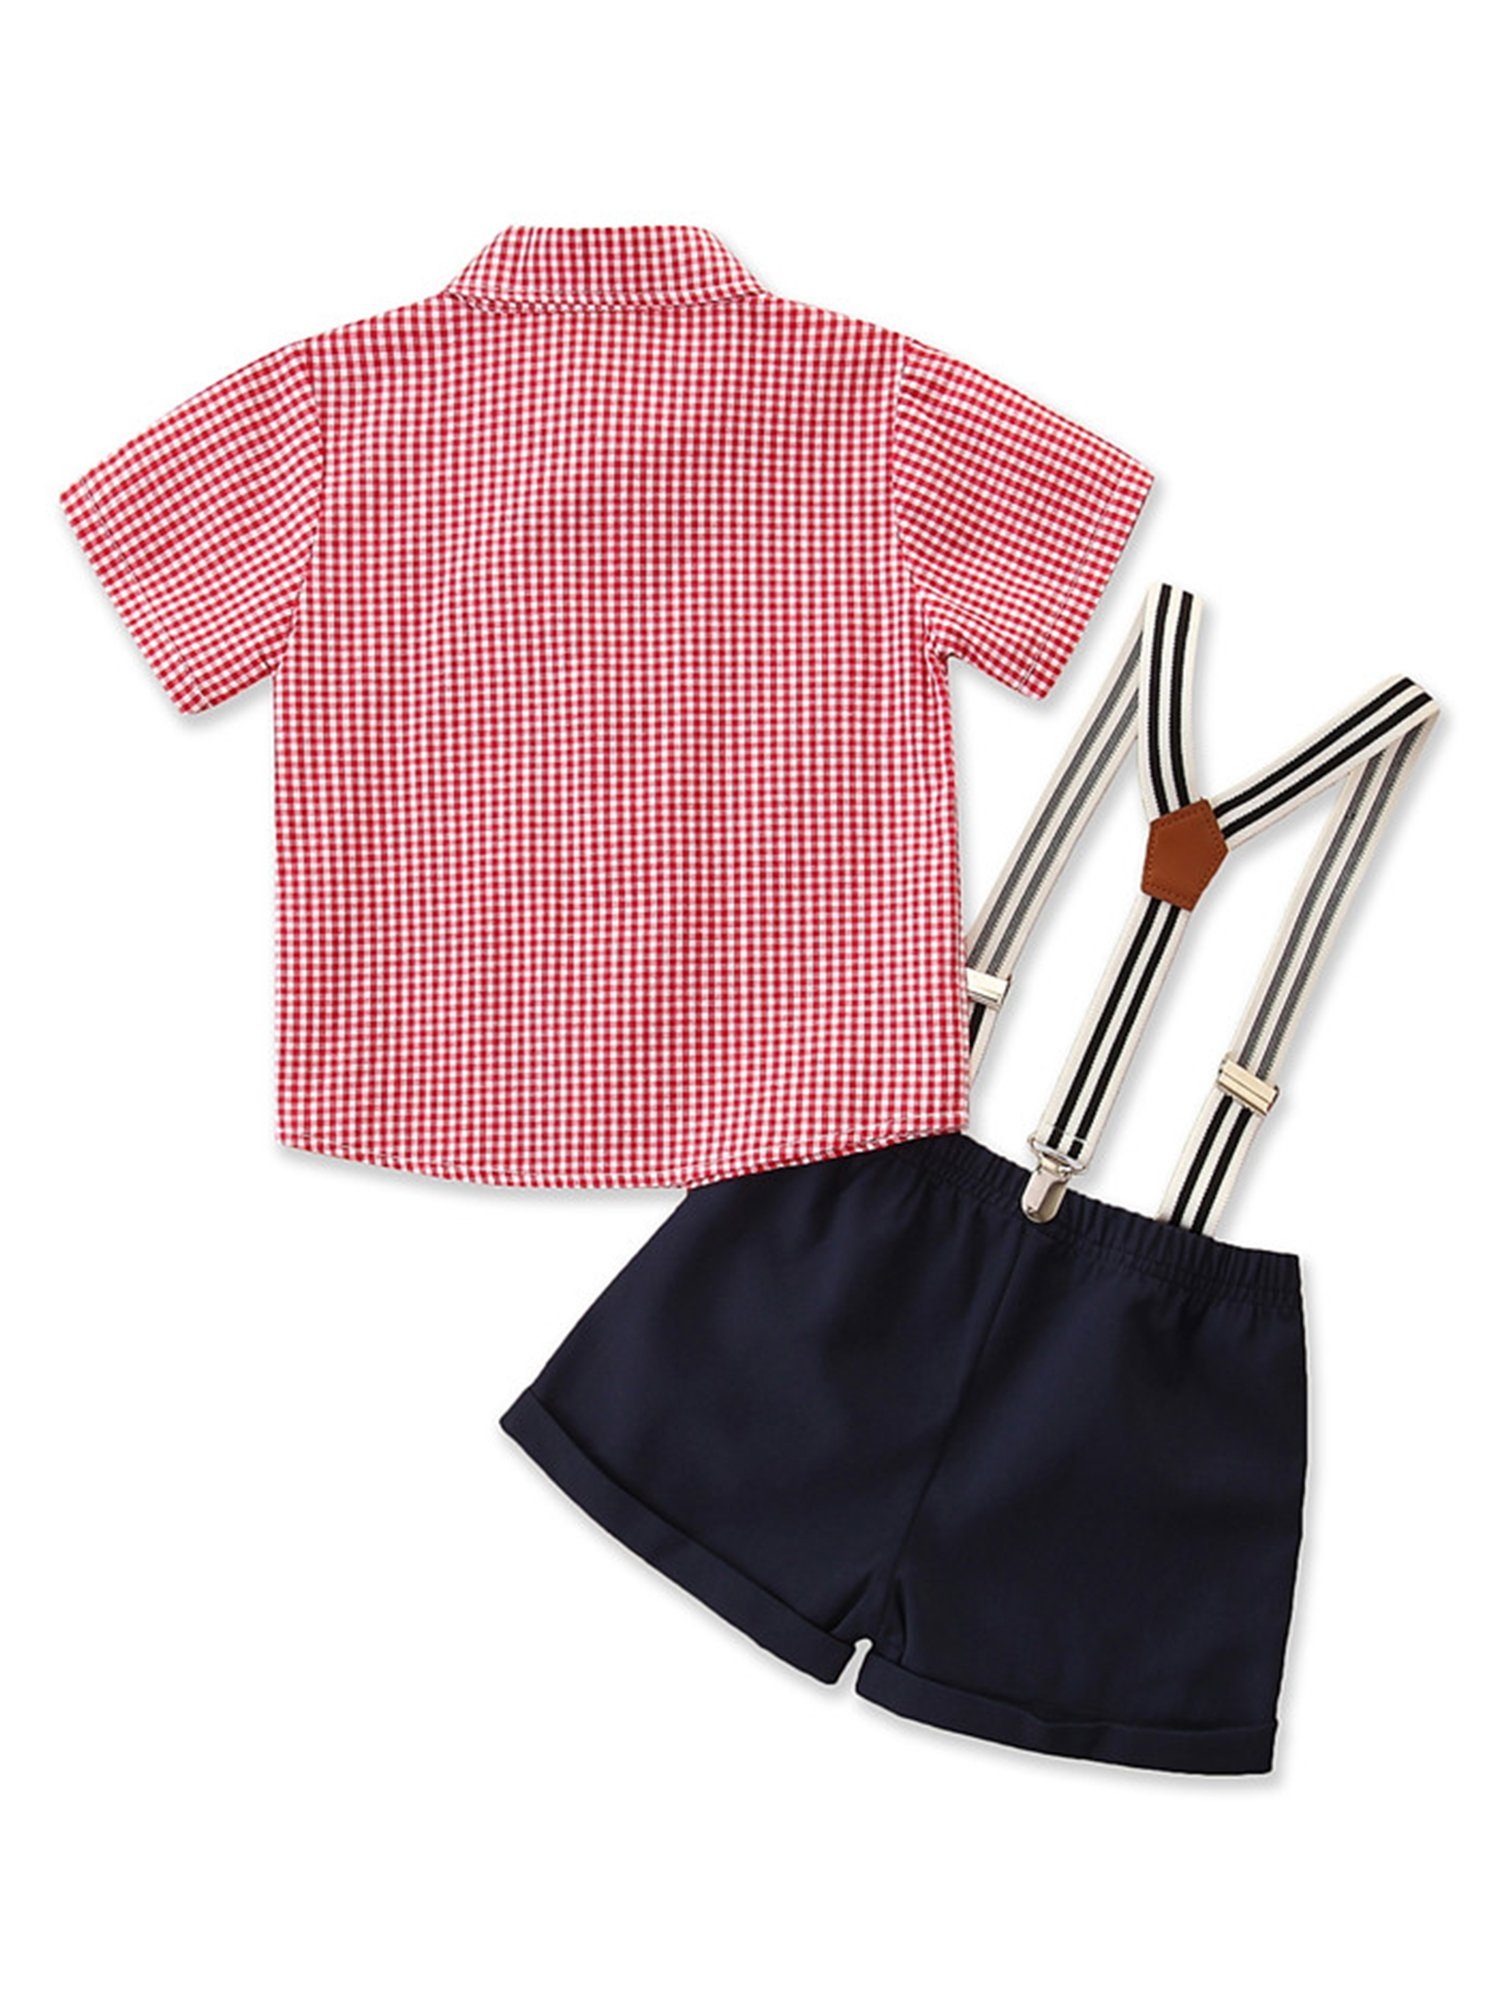 Kinder Jungen (Gr. 50 - 92) LAPA Shirt & Shorts LAPA Kinder-Herrenanzug, kariertes Kurzarmhemd für Jungen + zweiteiliges Lätzche